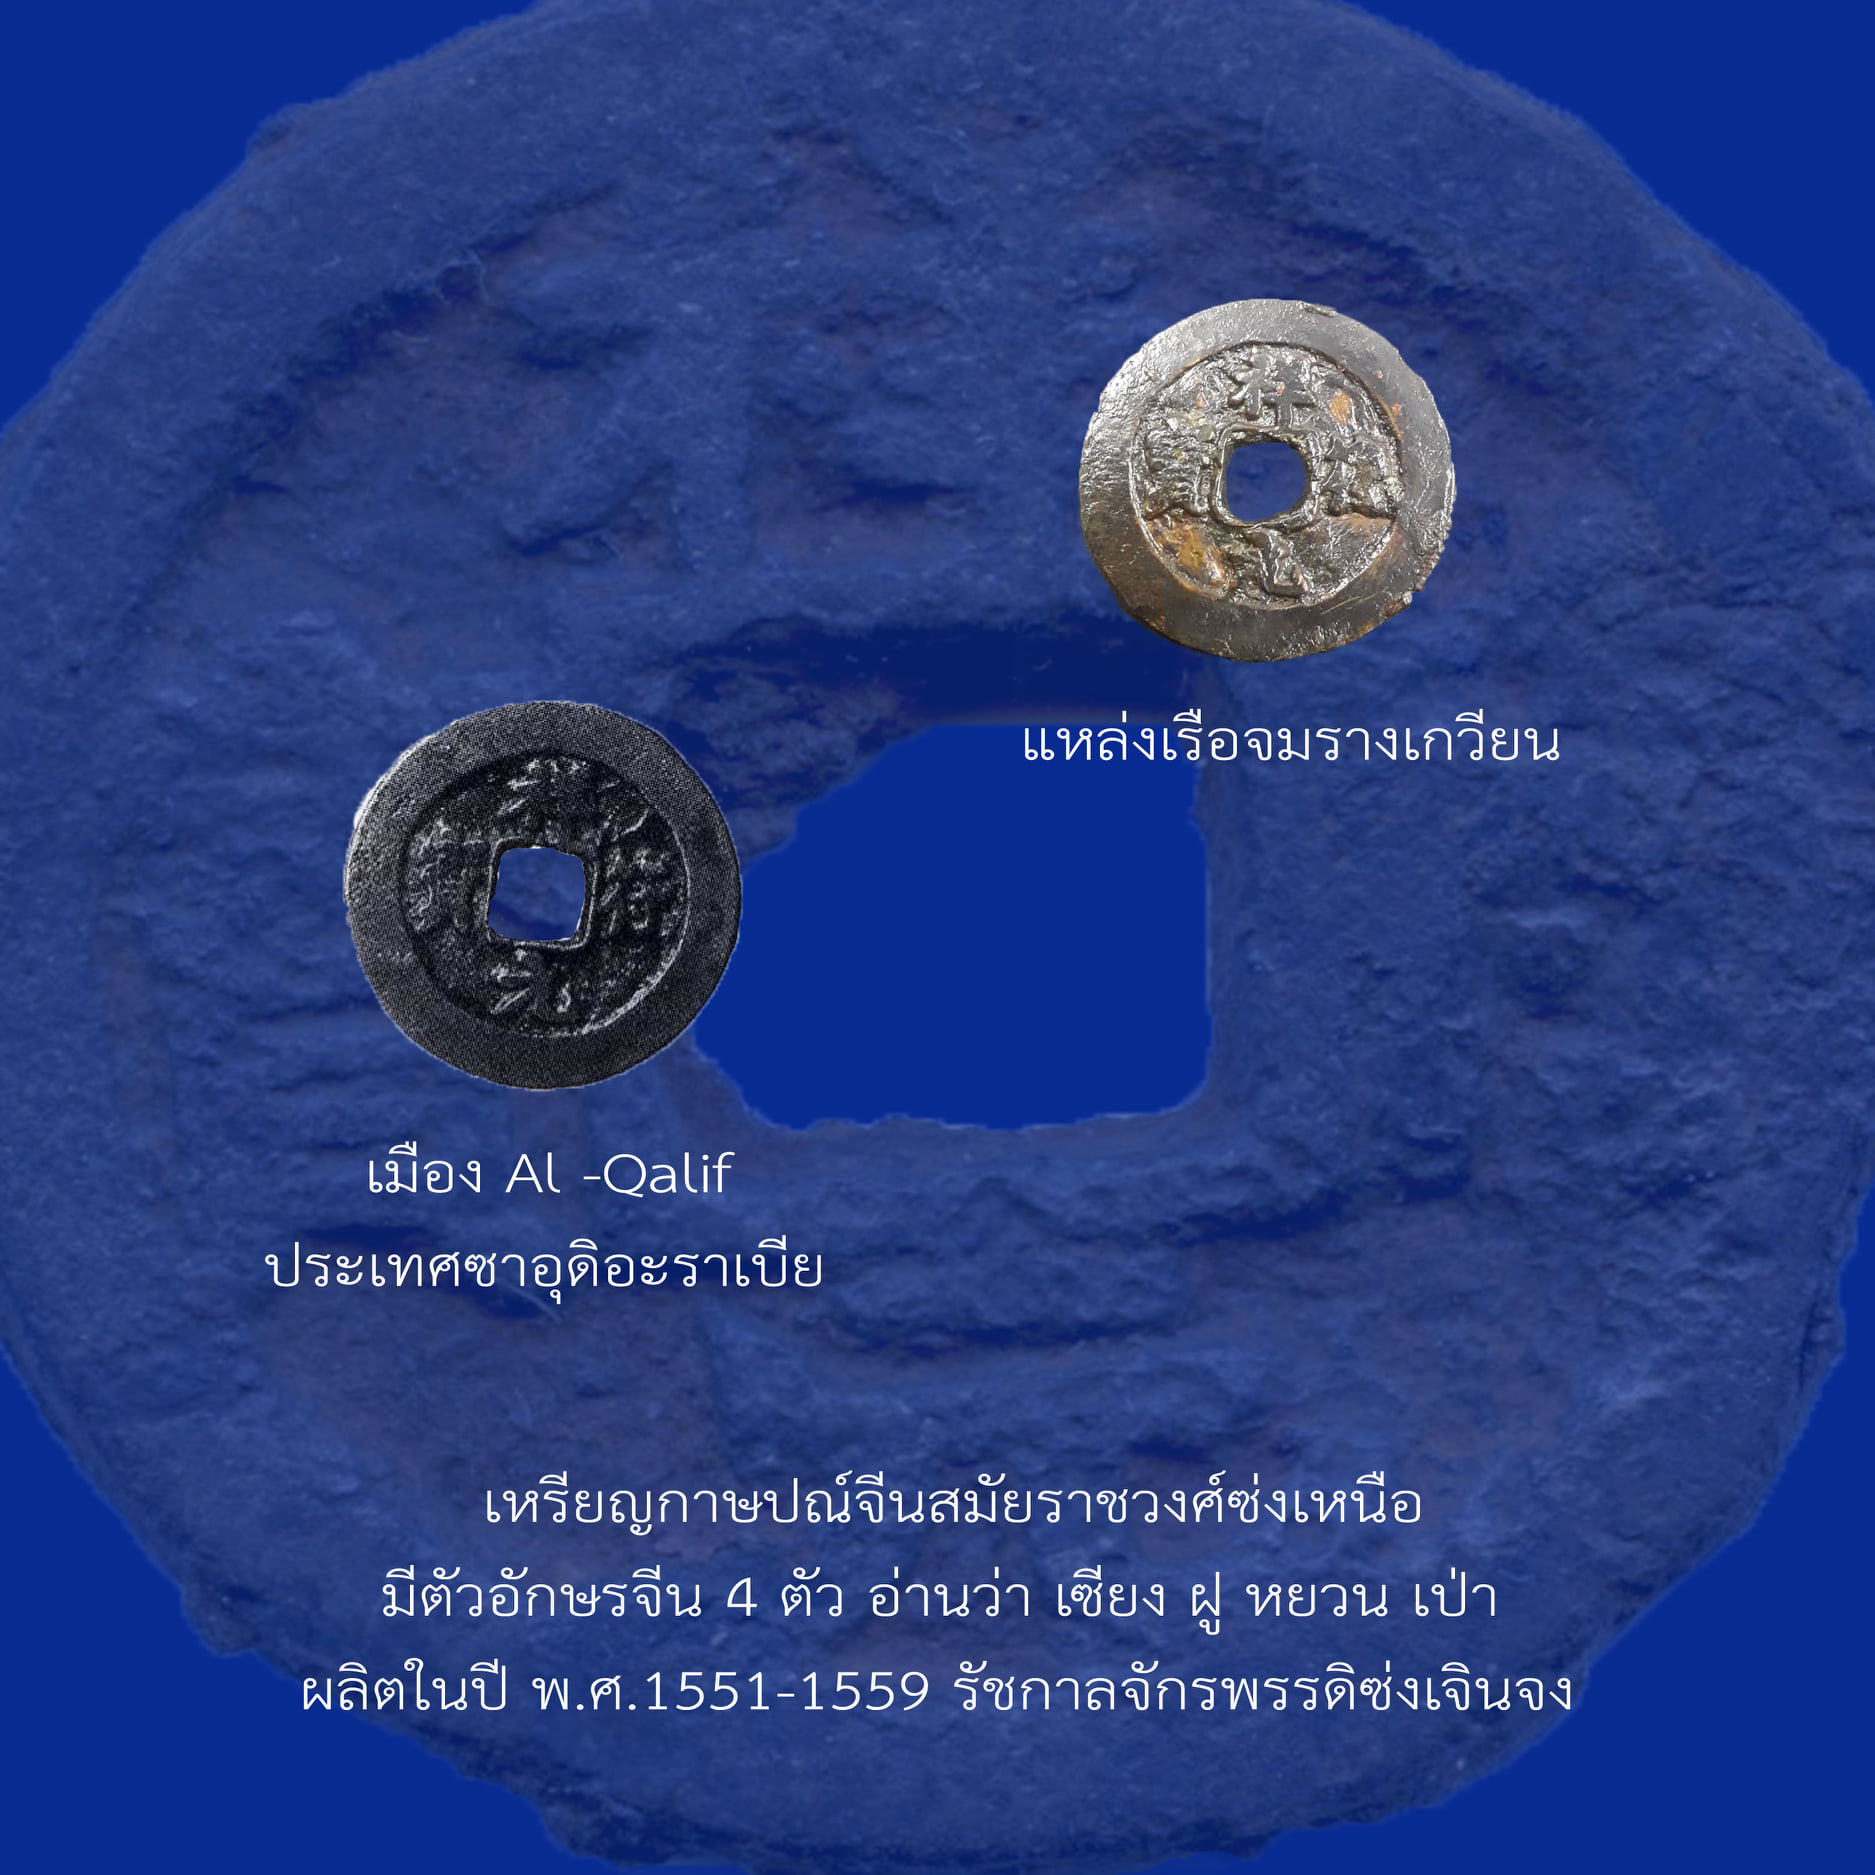 เรื่อง เหรียญกษาปณ์จีนที่พบในแหล่งเรือจม ตอนที่ 2 เหรียญสมัยราชวงศ์ซ่ง